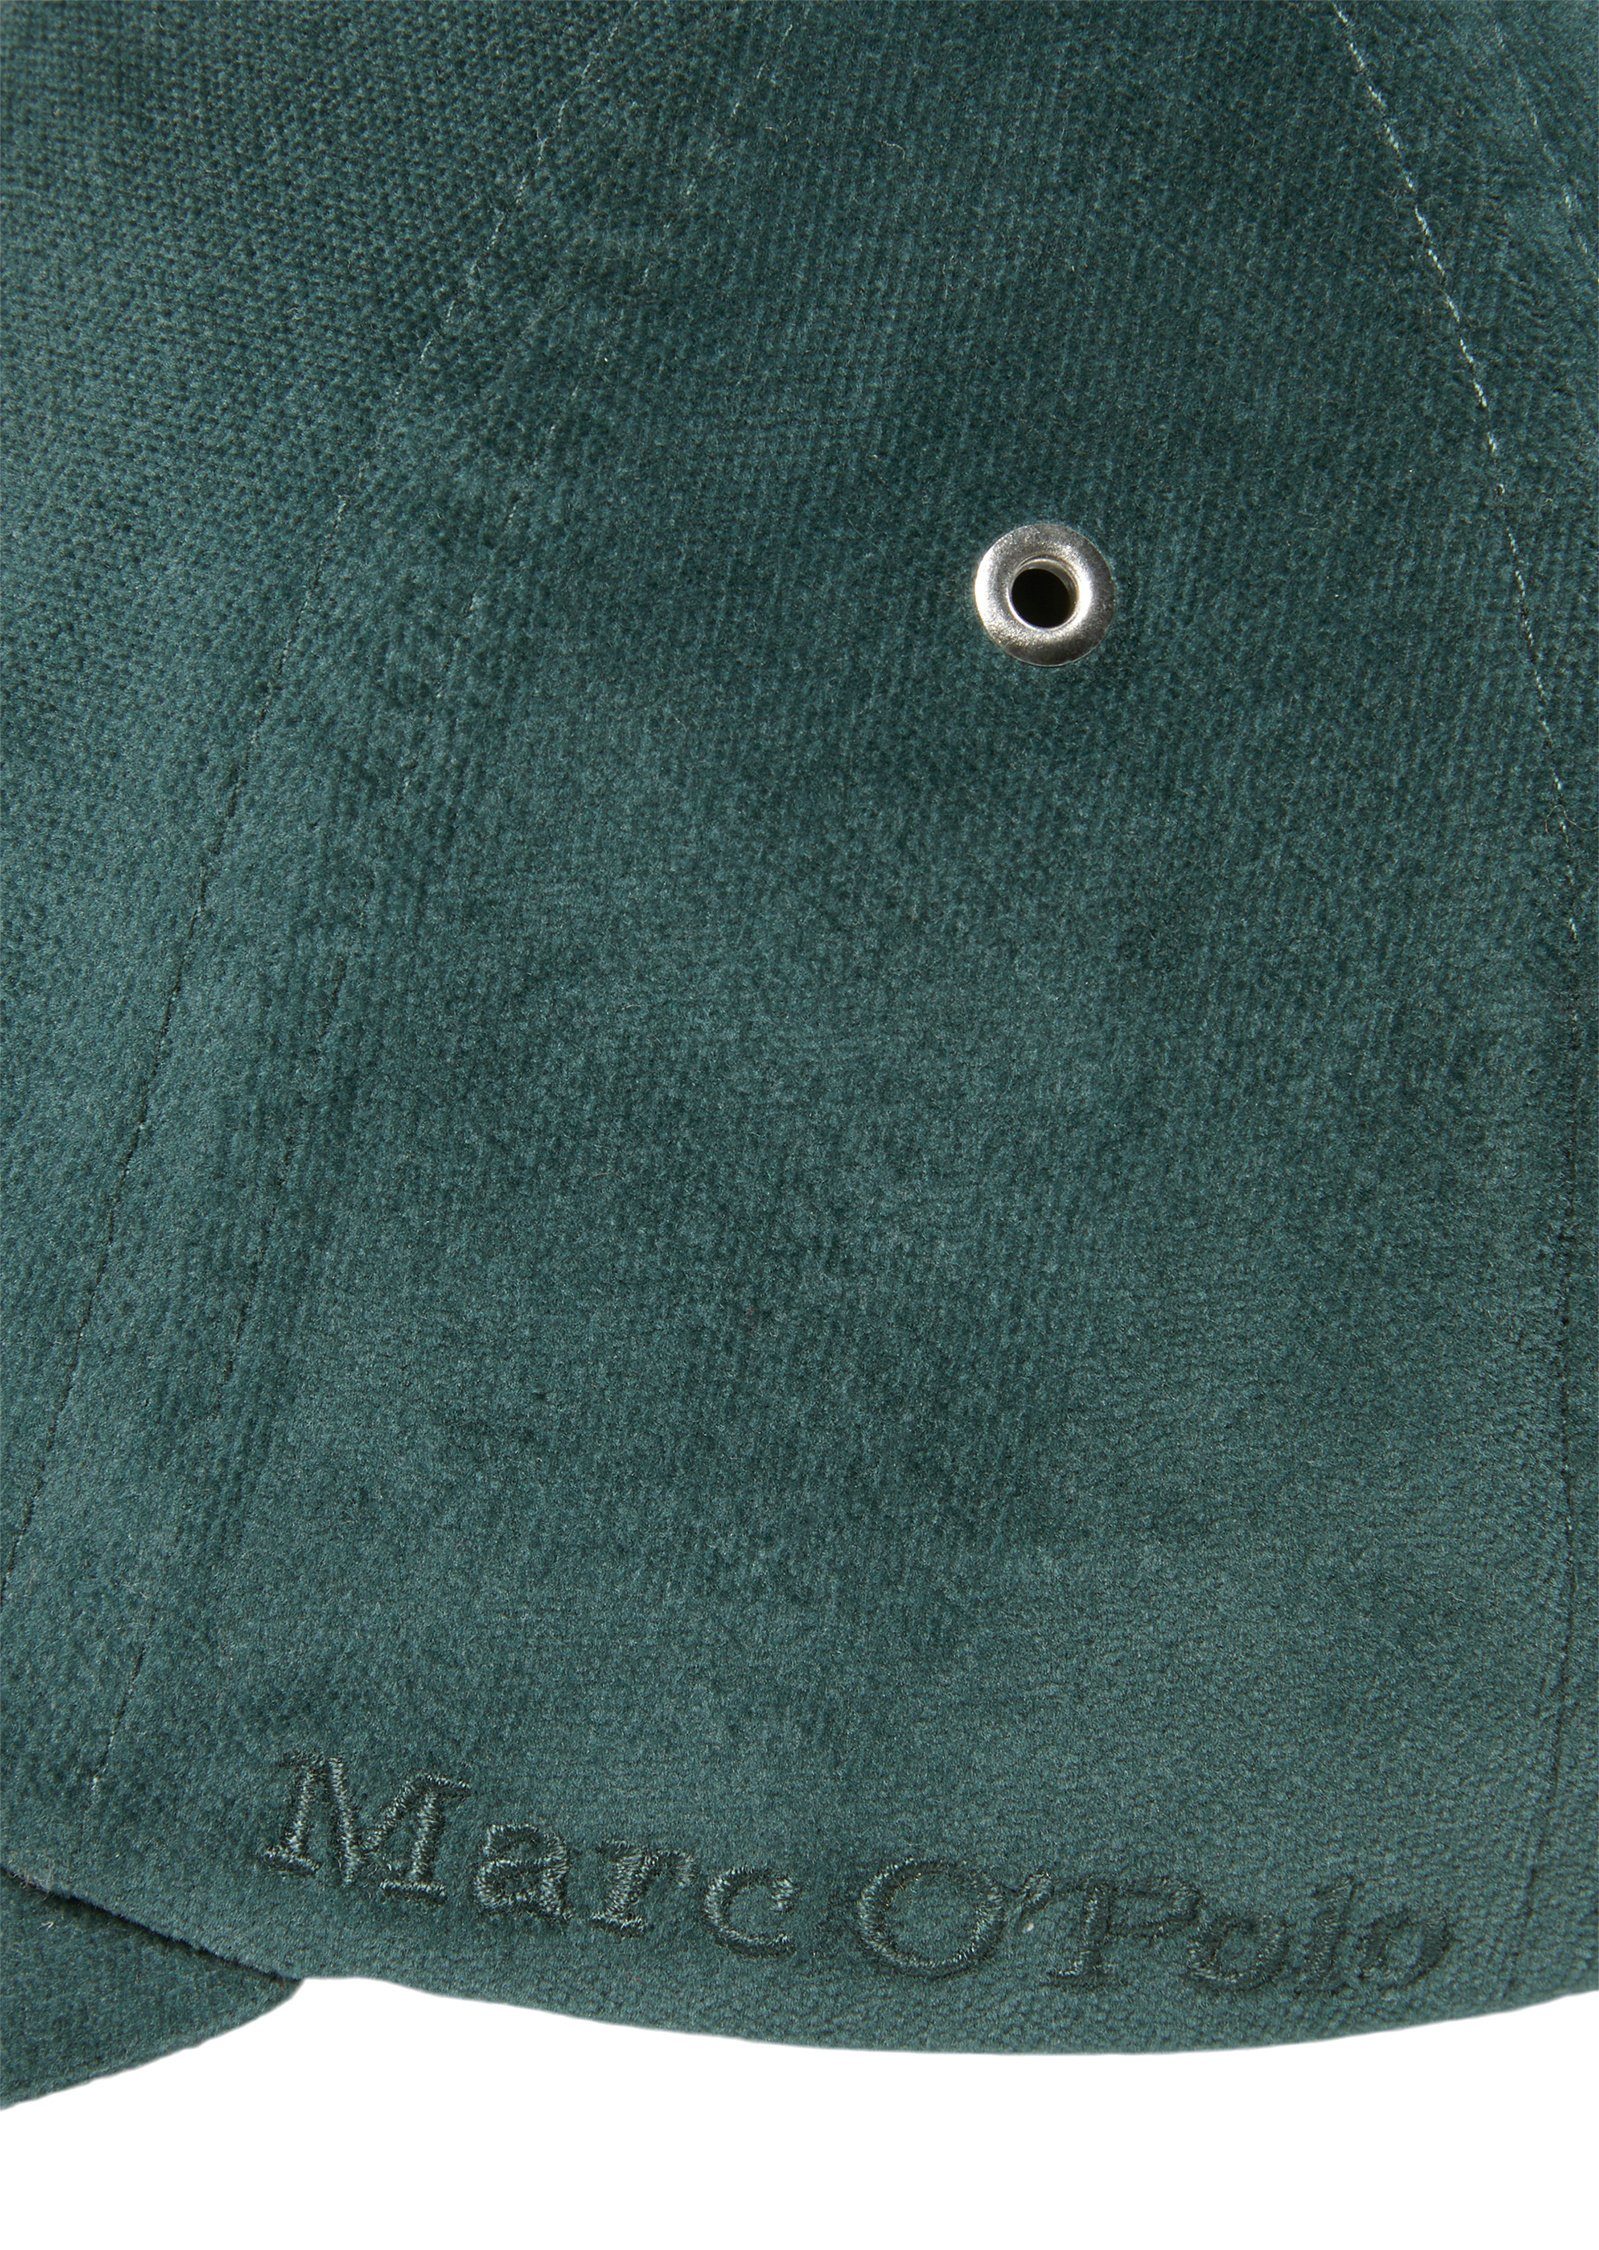 Marc O'Polo Baseball Cap Organic-Cotton-Lyocell-Mix grün aus